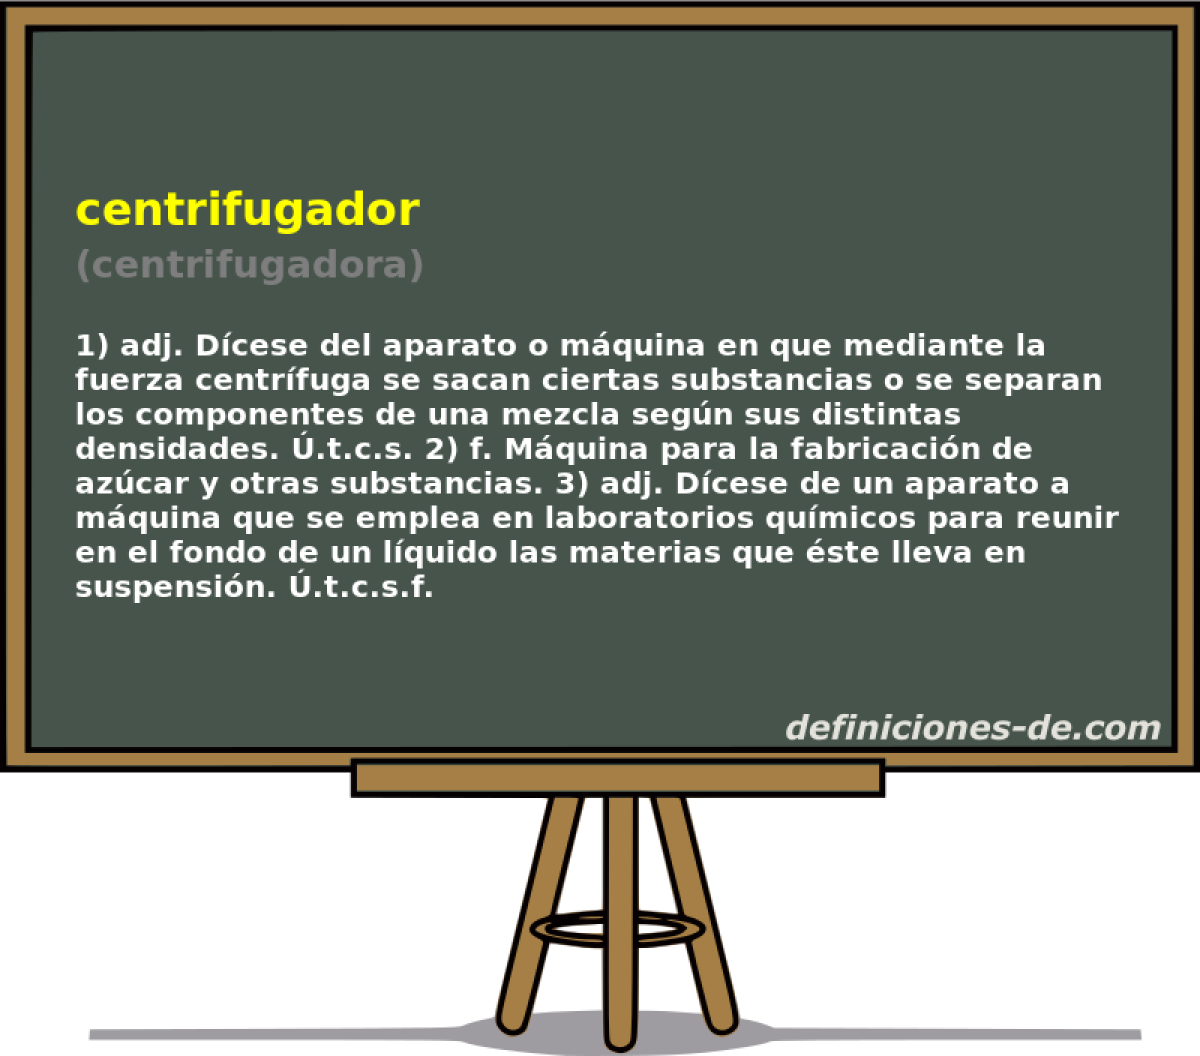 centrifugador (centrifugadora)